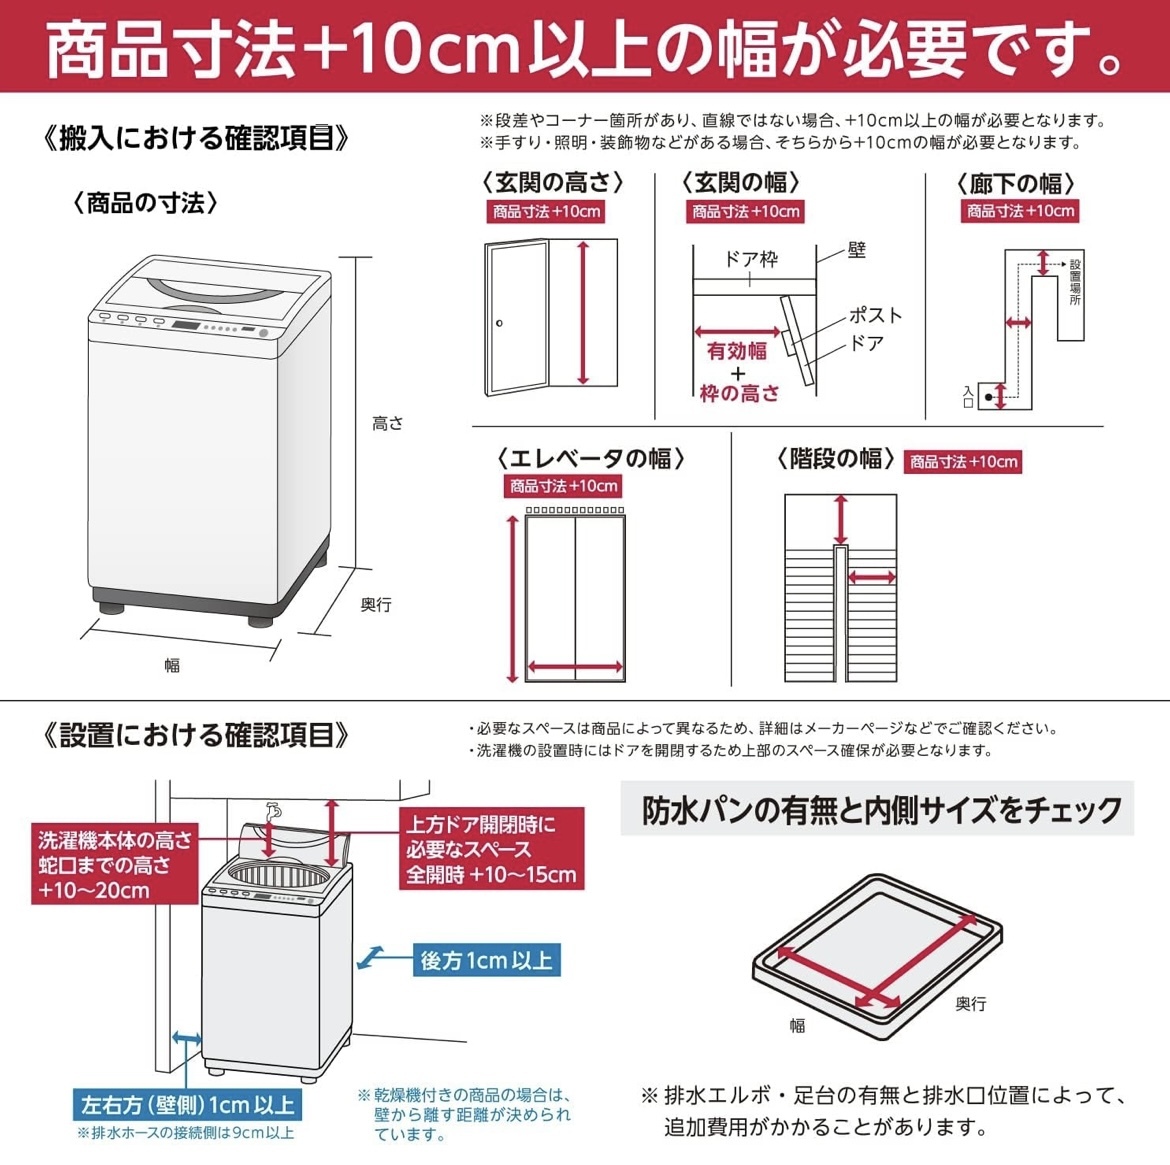 洗濯機 7kg 全自動 風乾燥 1-3人用 一人暮らし 予約洗濯 スピードコース ステンレス槽 ガラスドアの画像2